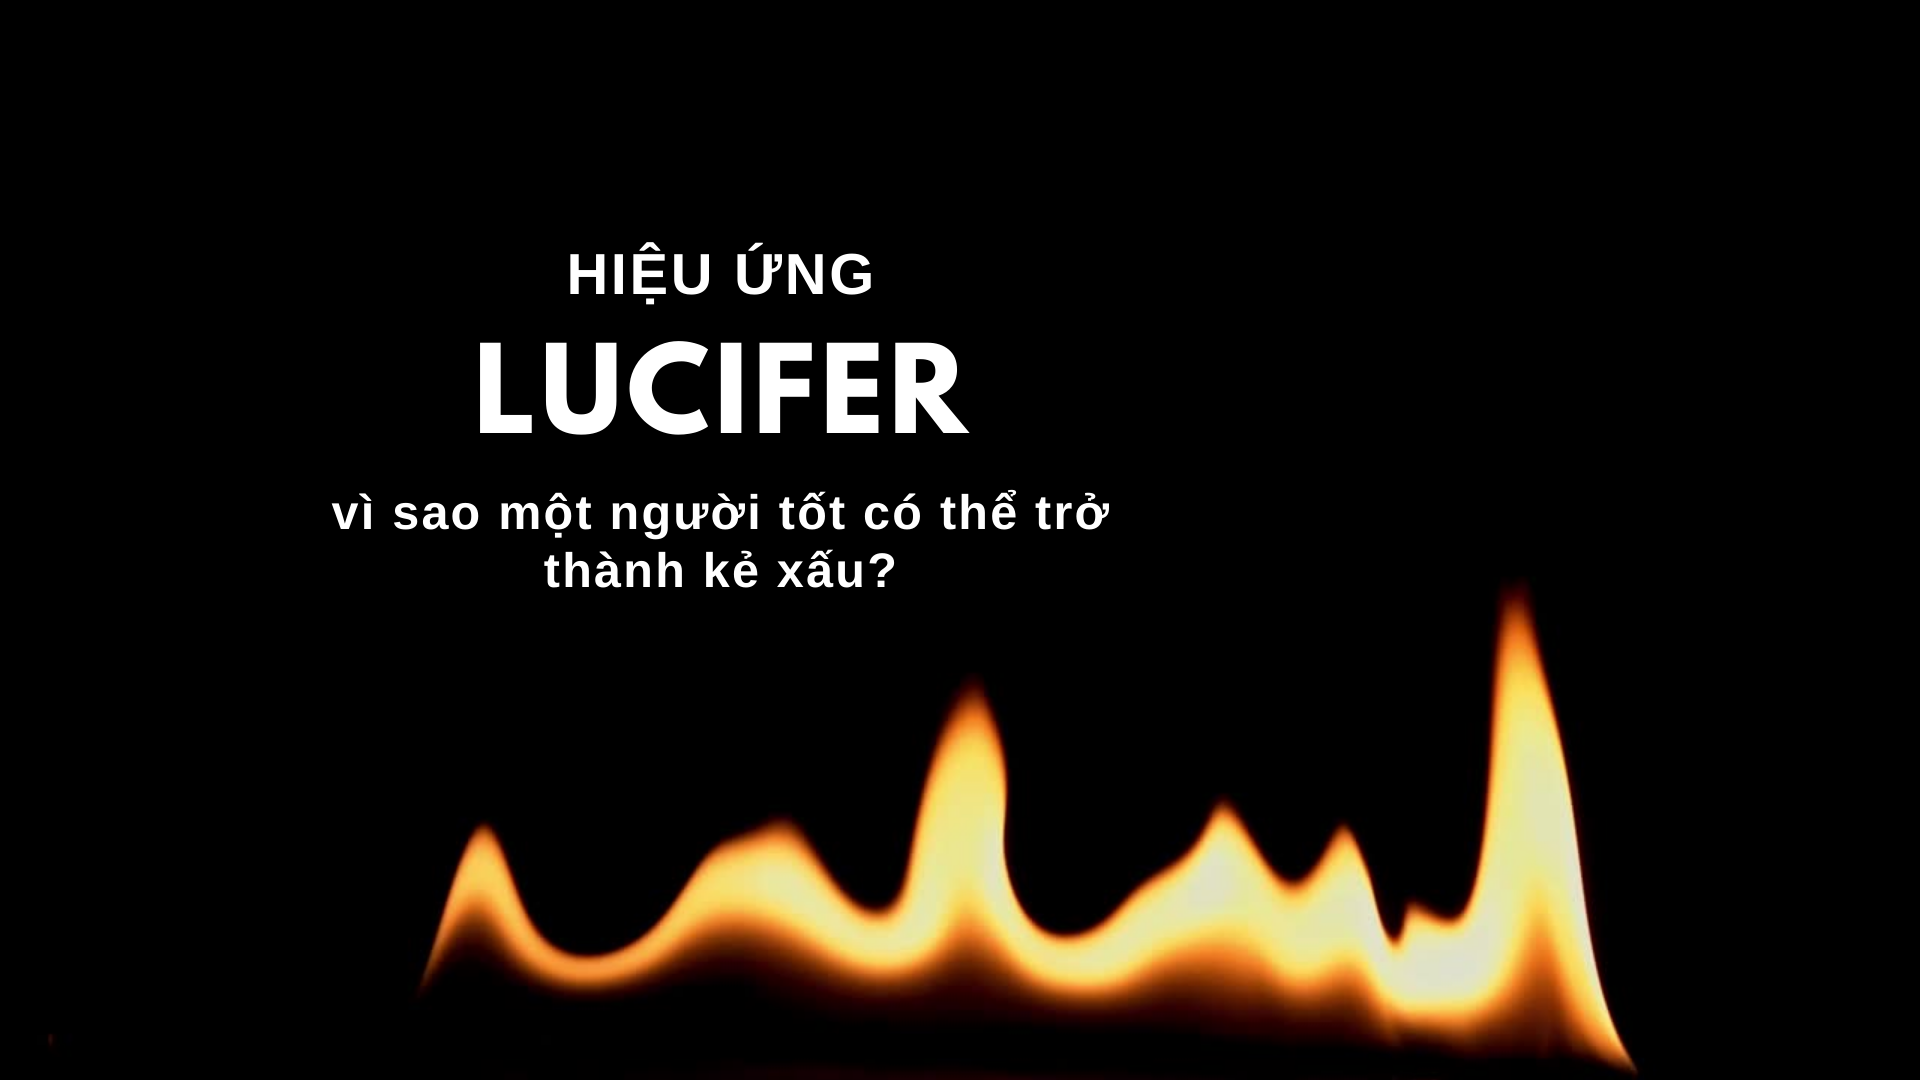 Hiệu ứng Lucifer, vì sao một người tốt có thể trở thành kẻ xấu?